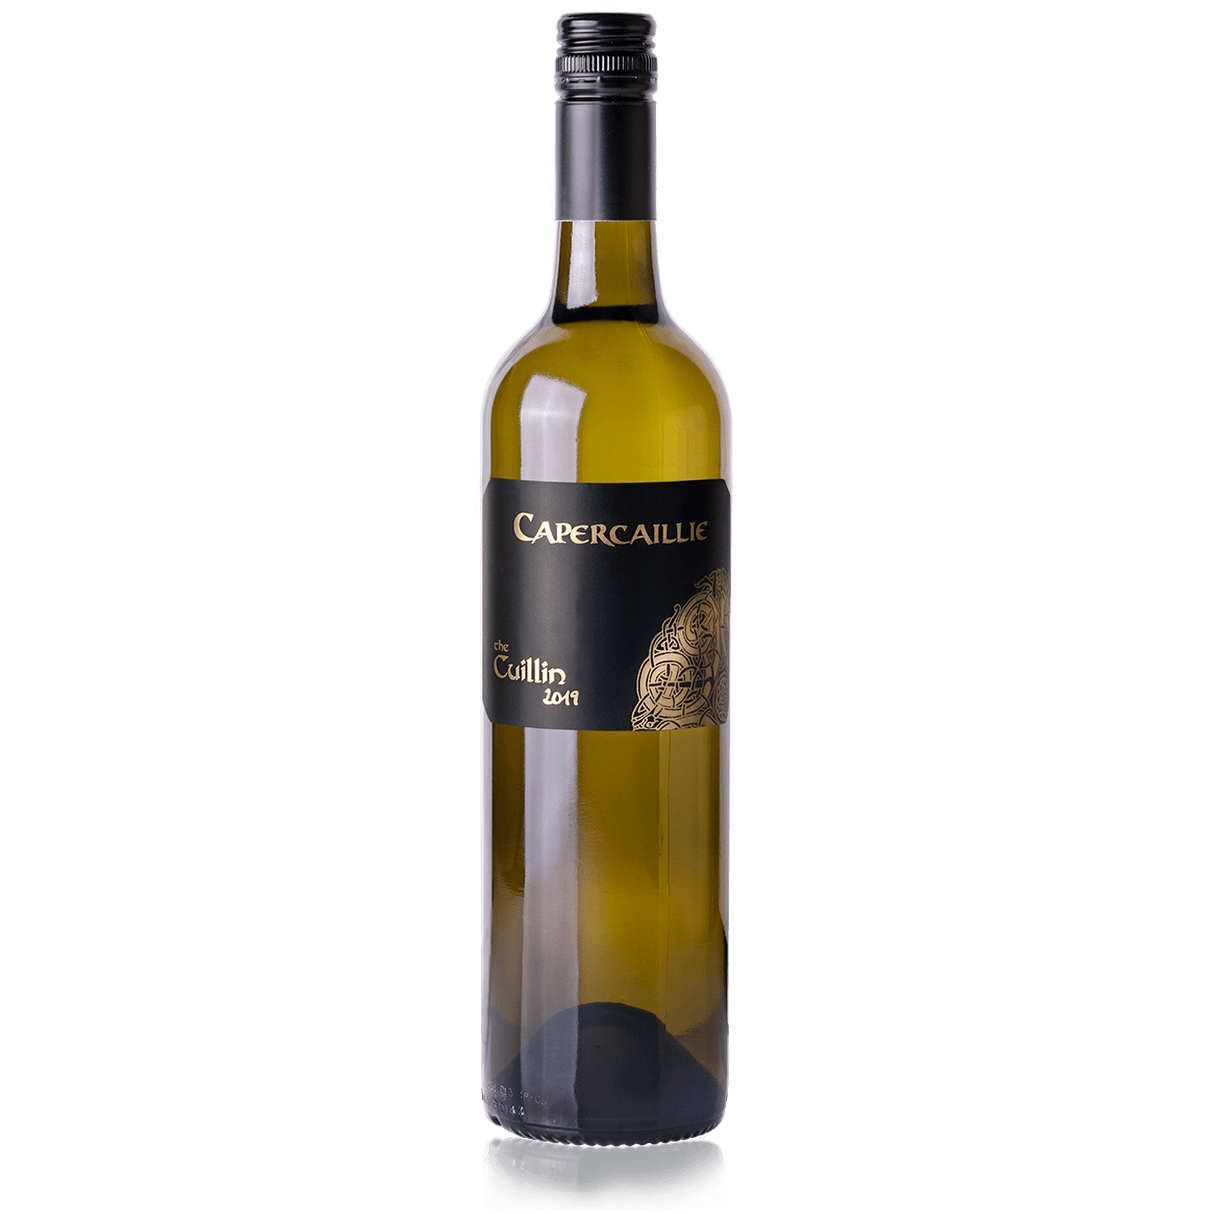 Capercaillie ‘The Cuillin’ Chardonnay 2019 (6 bottles)